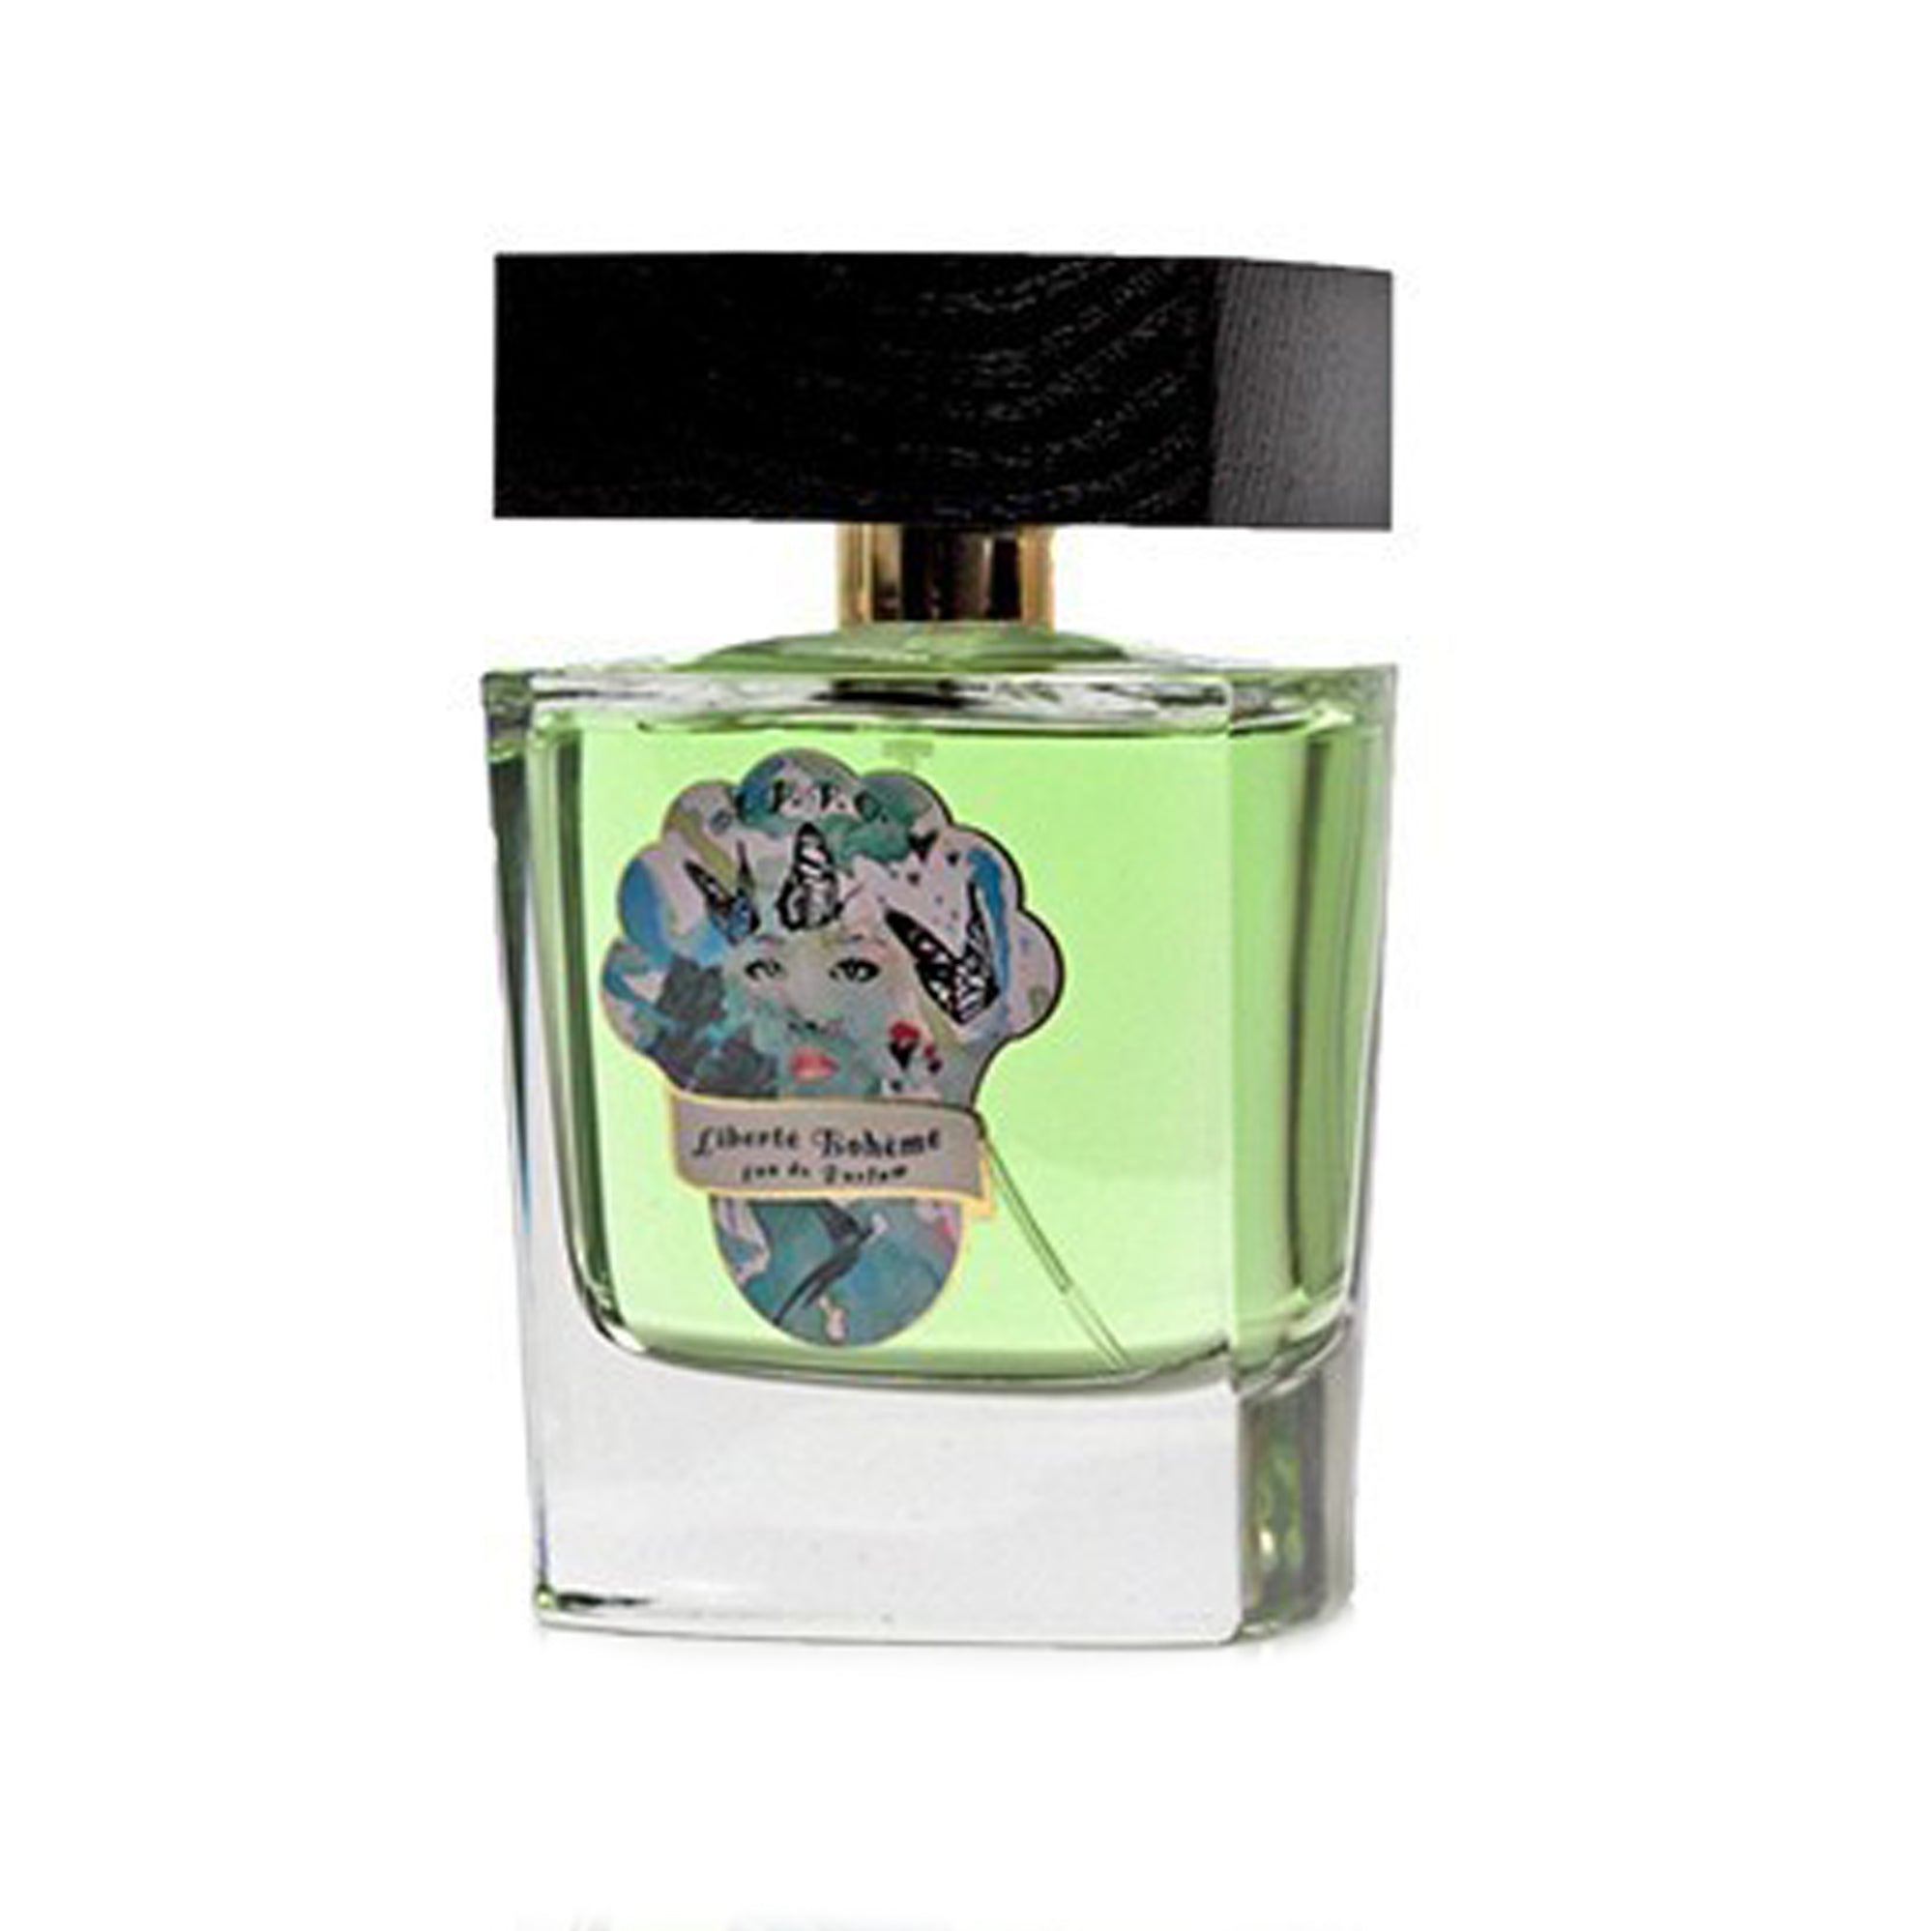 Liberte Boheme 100ml Eau de Parfum Bottle by Au Pays de la Fleur D'Oranger